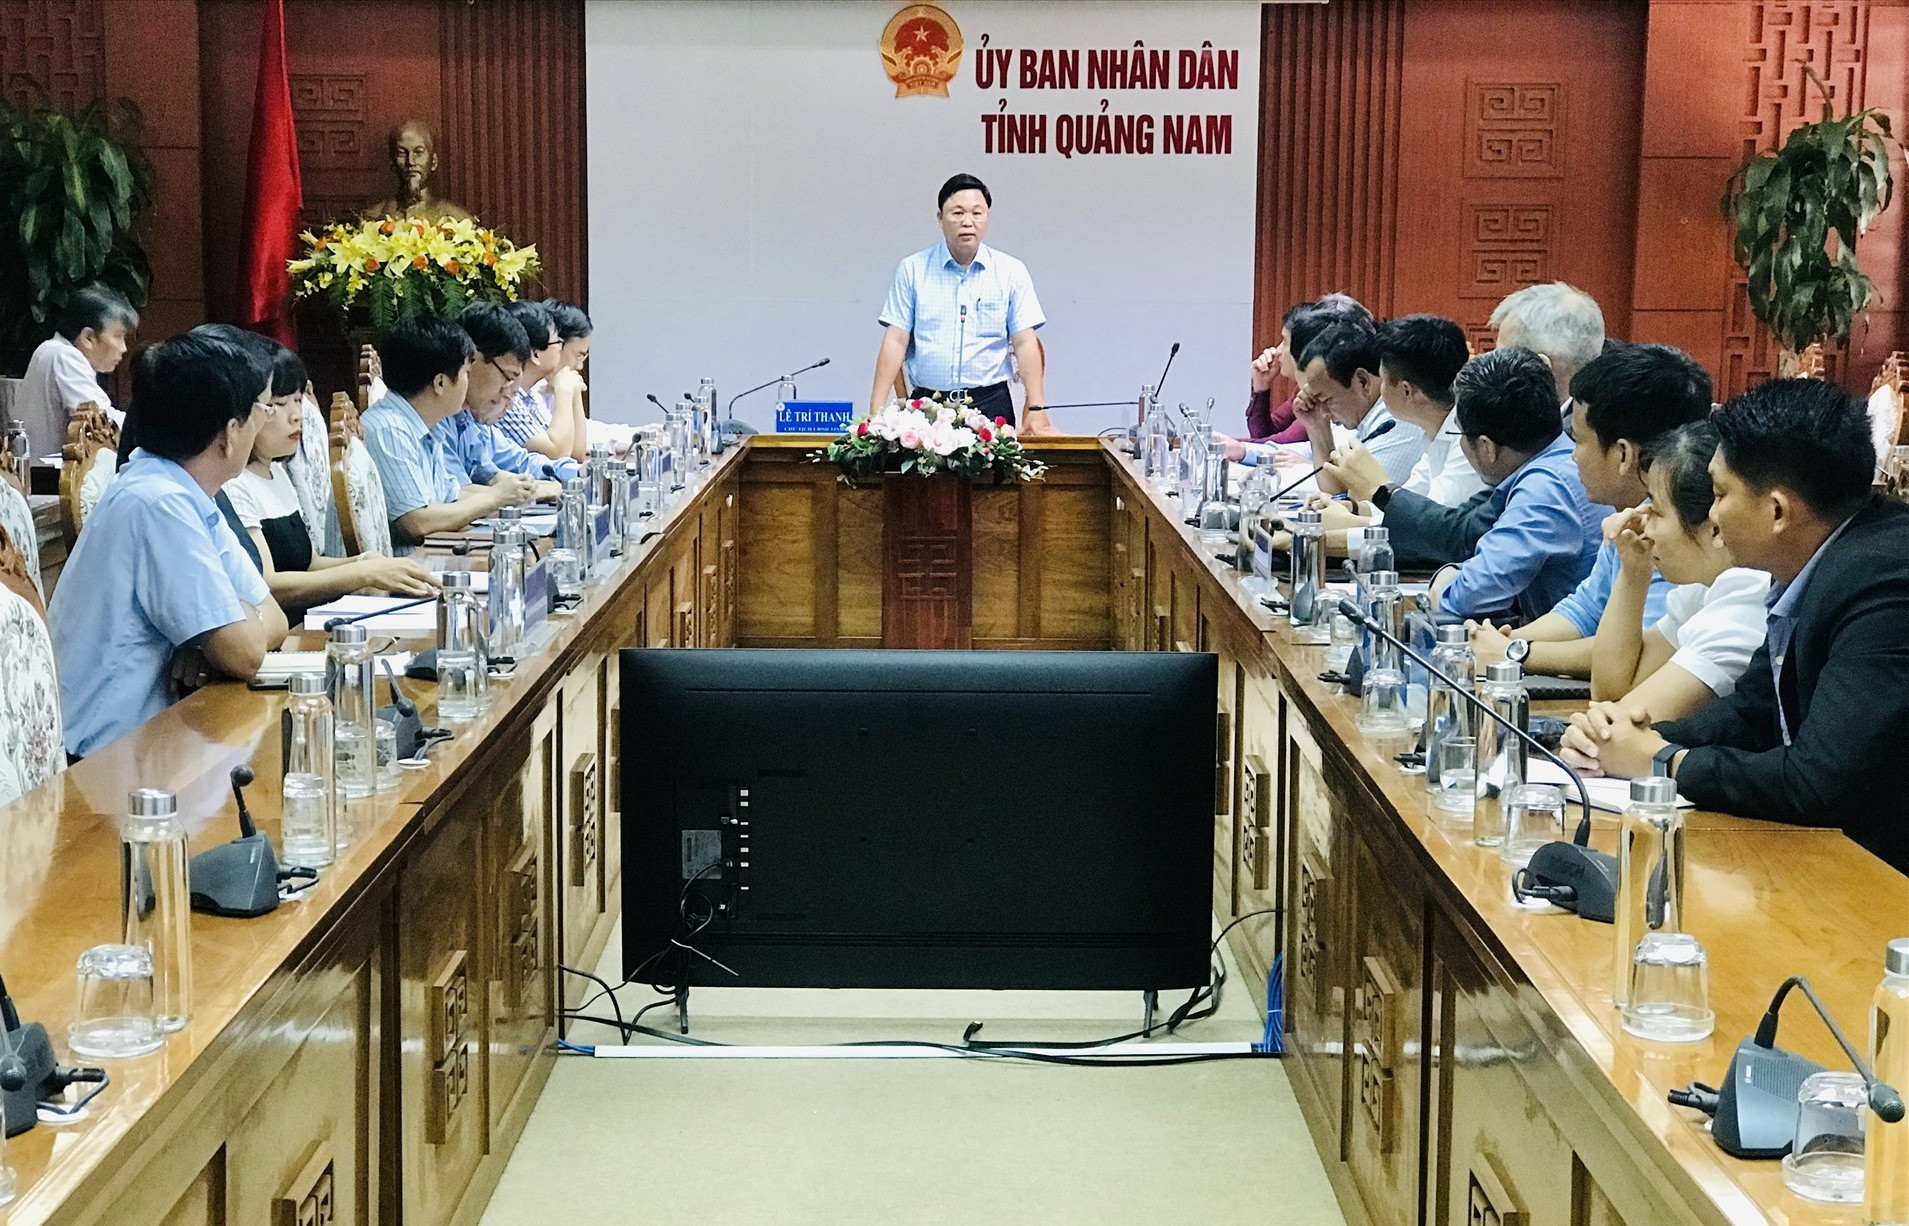 Chủ tịch UBND tỉnh Lê Trí Thanh yêu cầu các đơn vị liên quan phải chuẩn bị thật tốt để đăng ký thí điểm đón các chuyến bay charter đến Quảng Nam. Ảnh: Q.T